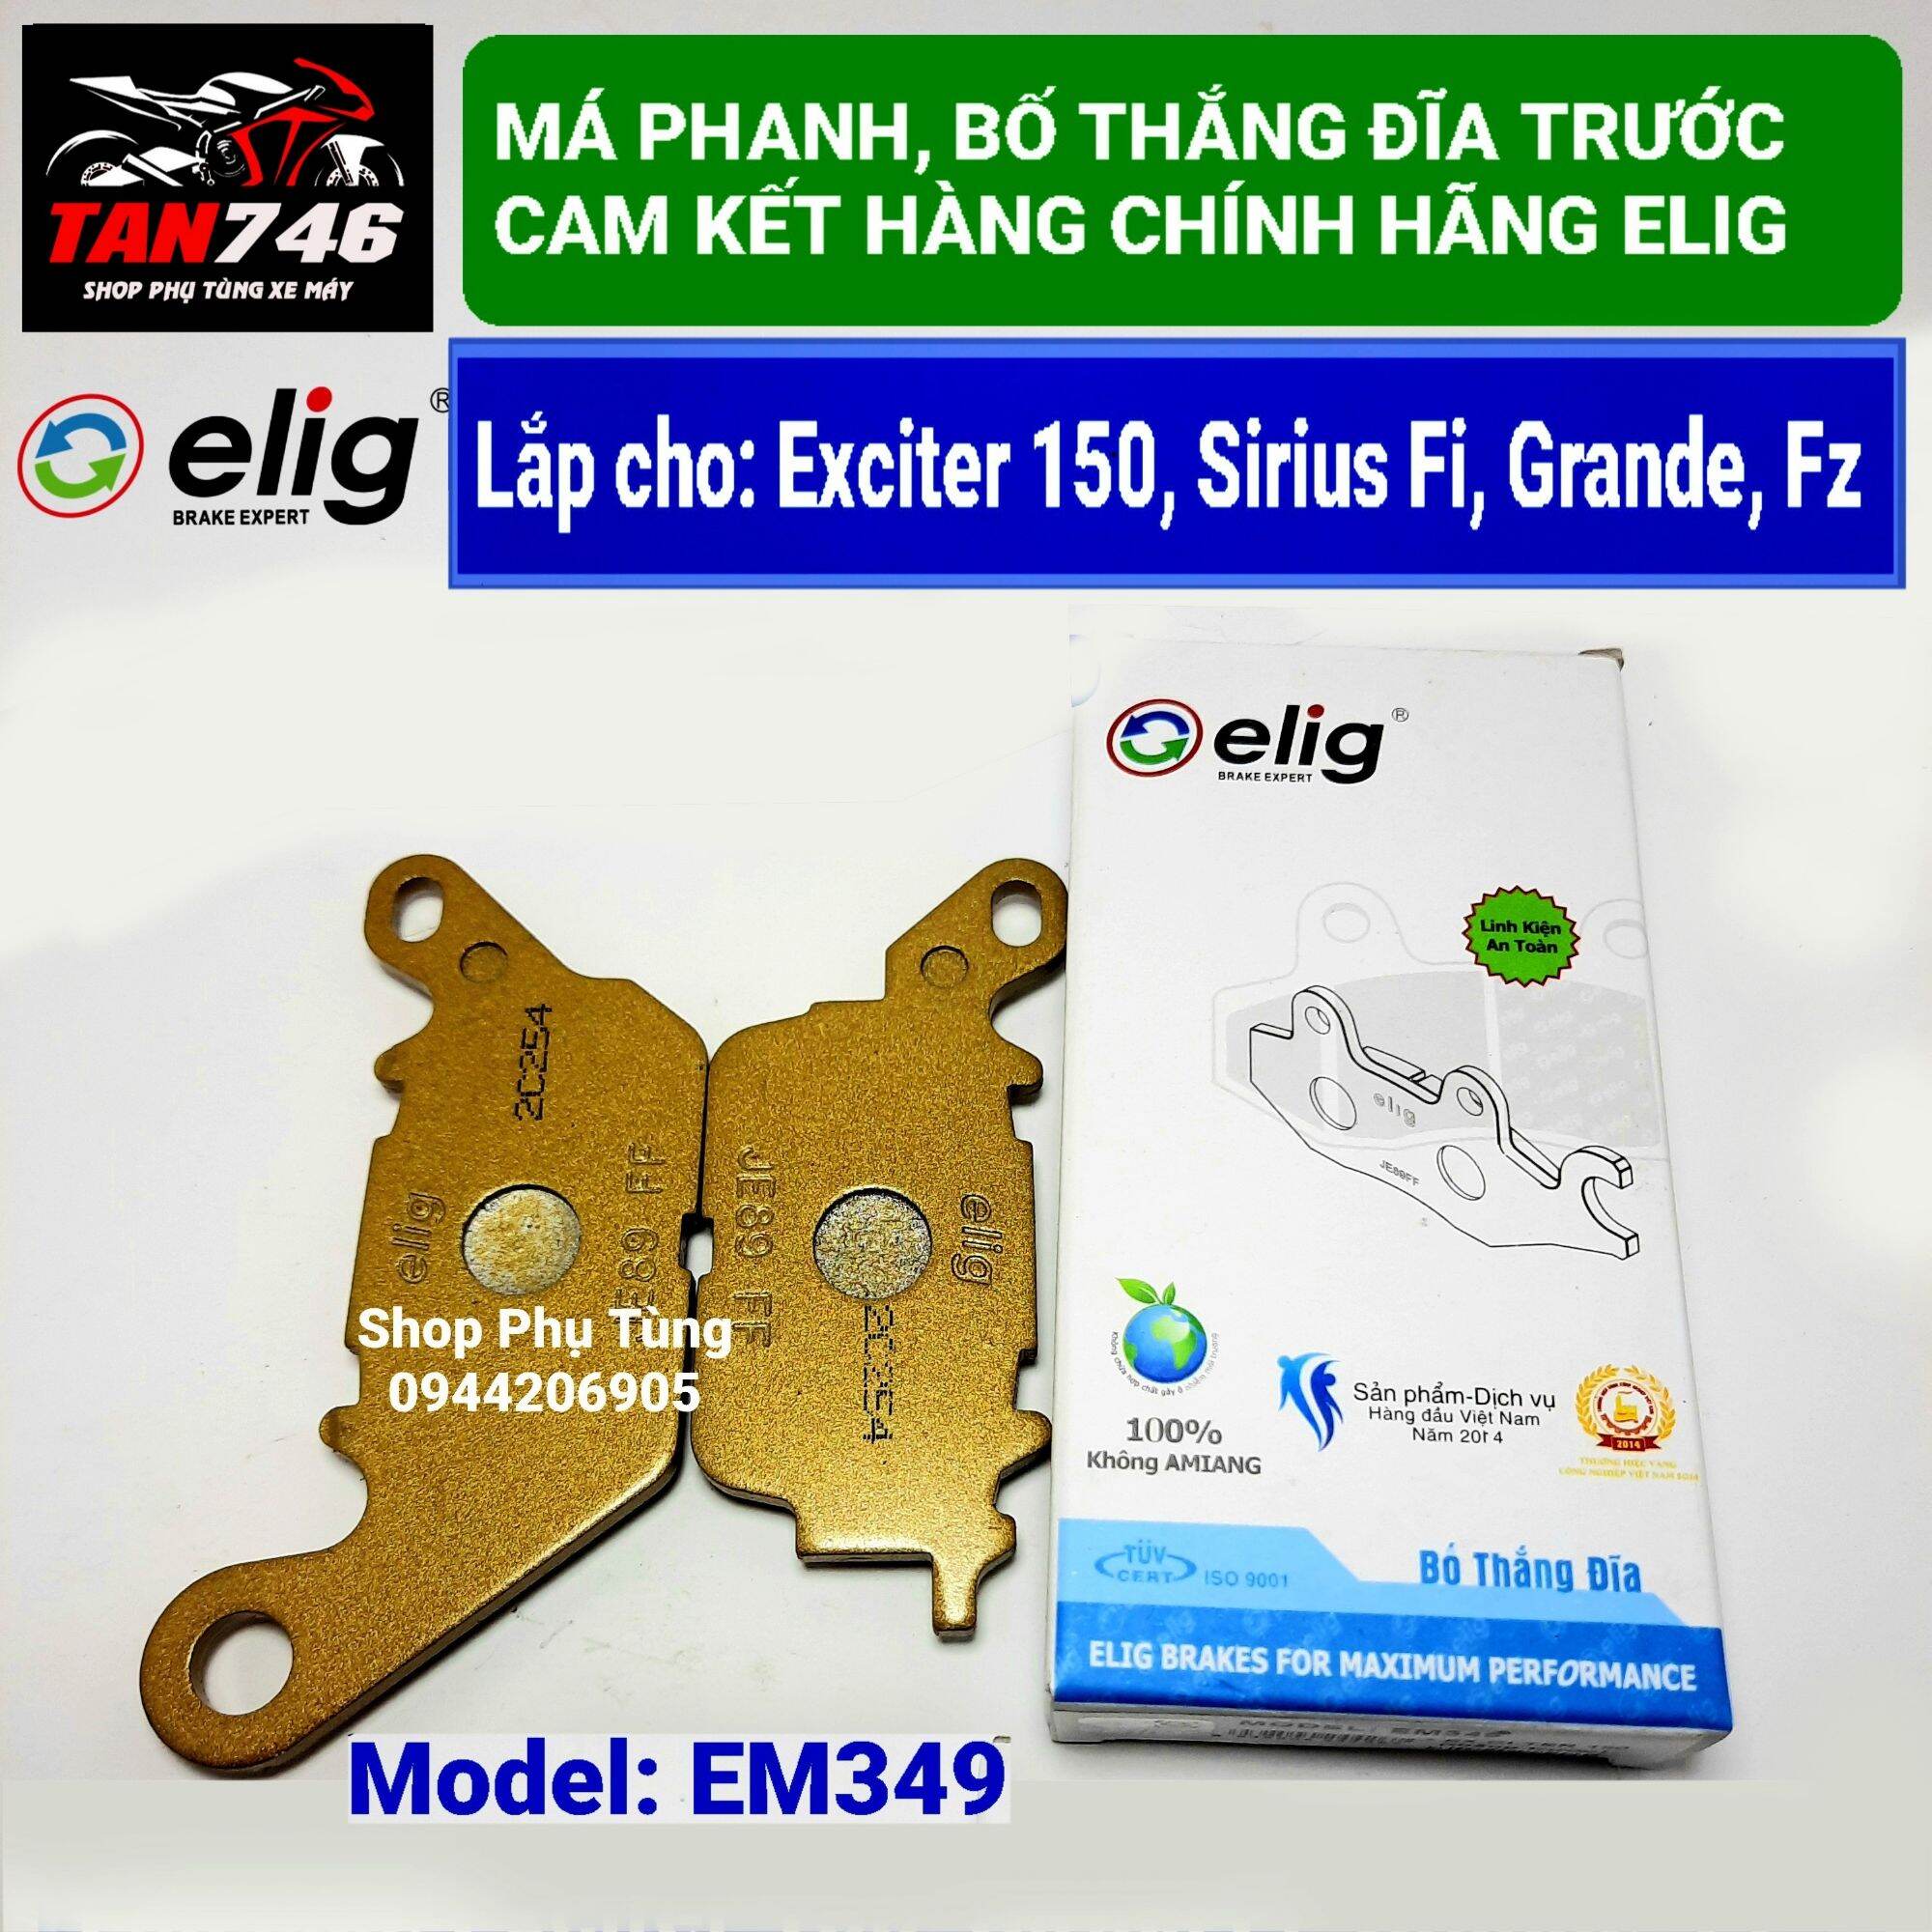 Má phanh. Bố thắng đĩa trước ELIG, mã EM349 lắp cho Exciter 150, Sirius Fi  ( Trừ Sirius Fi 2014 ) Grande, NVX 125-155, Fx | Lazada.vn